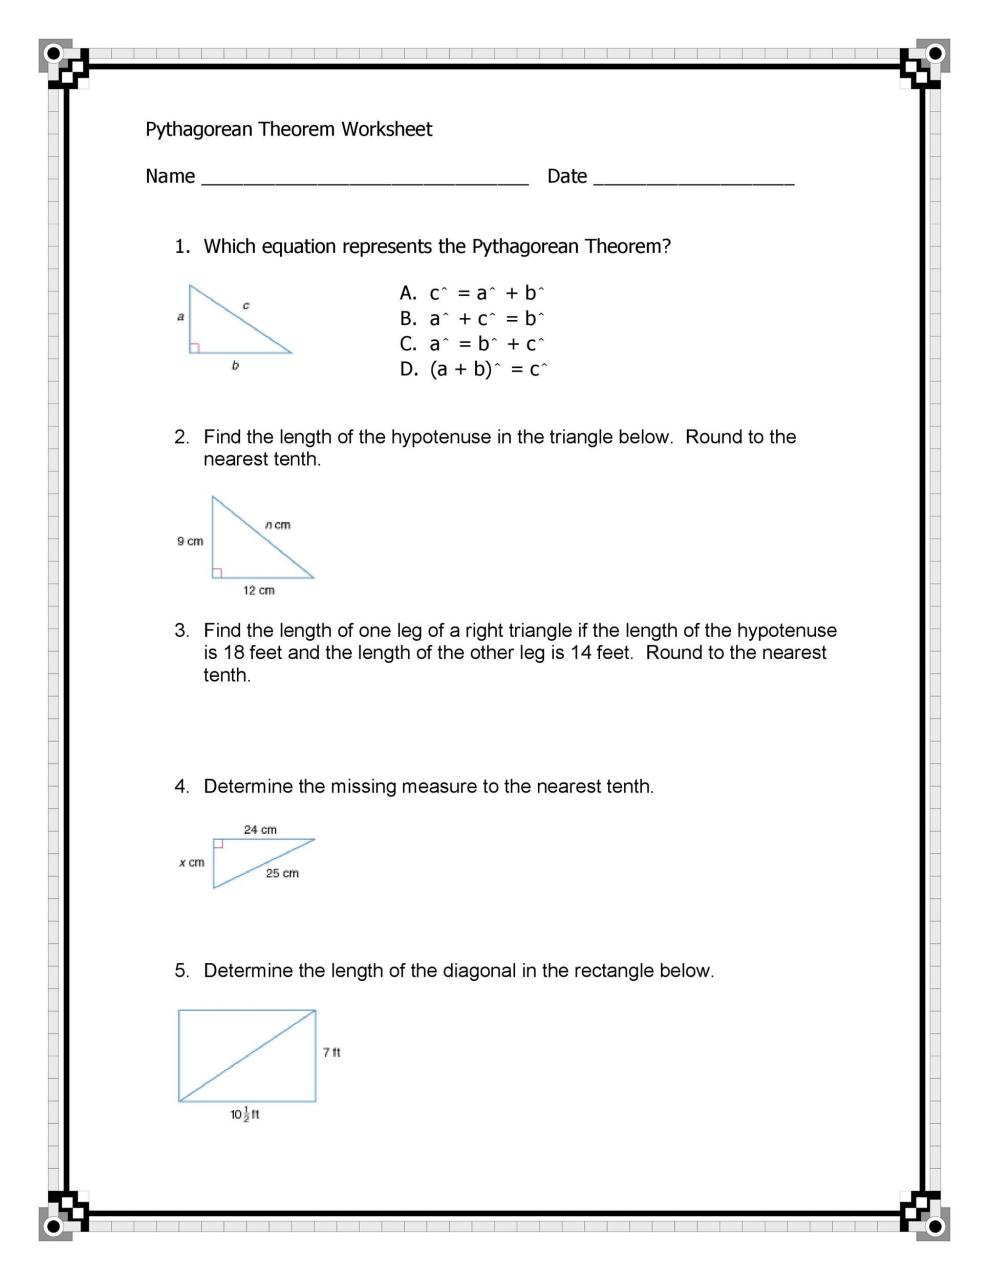 Libre teorema de pitágoras 10